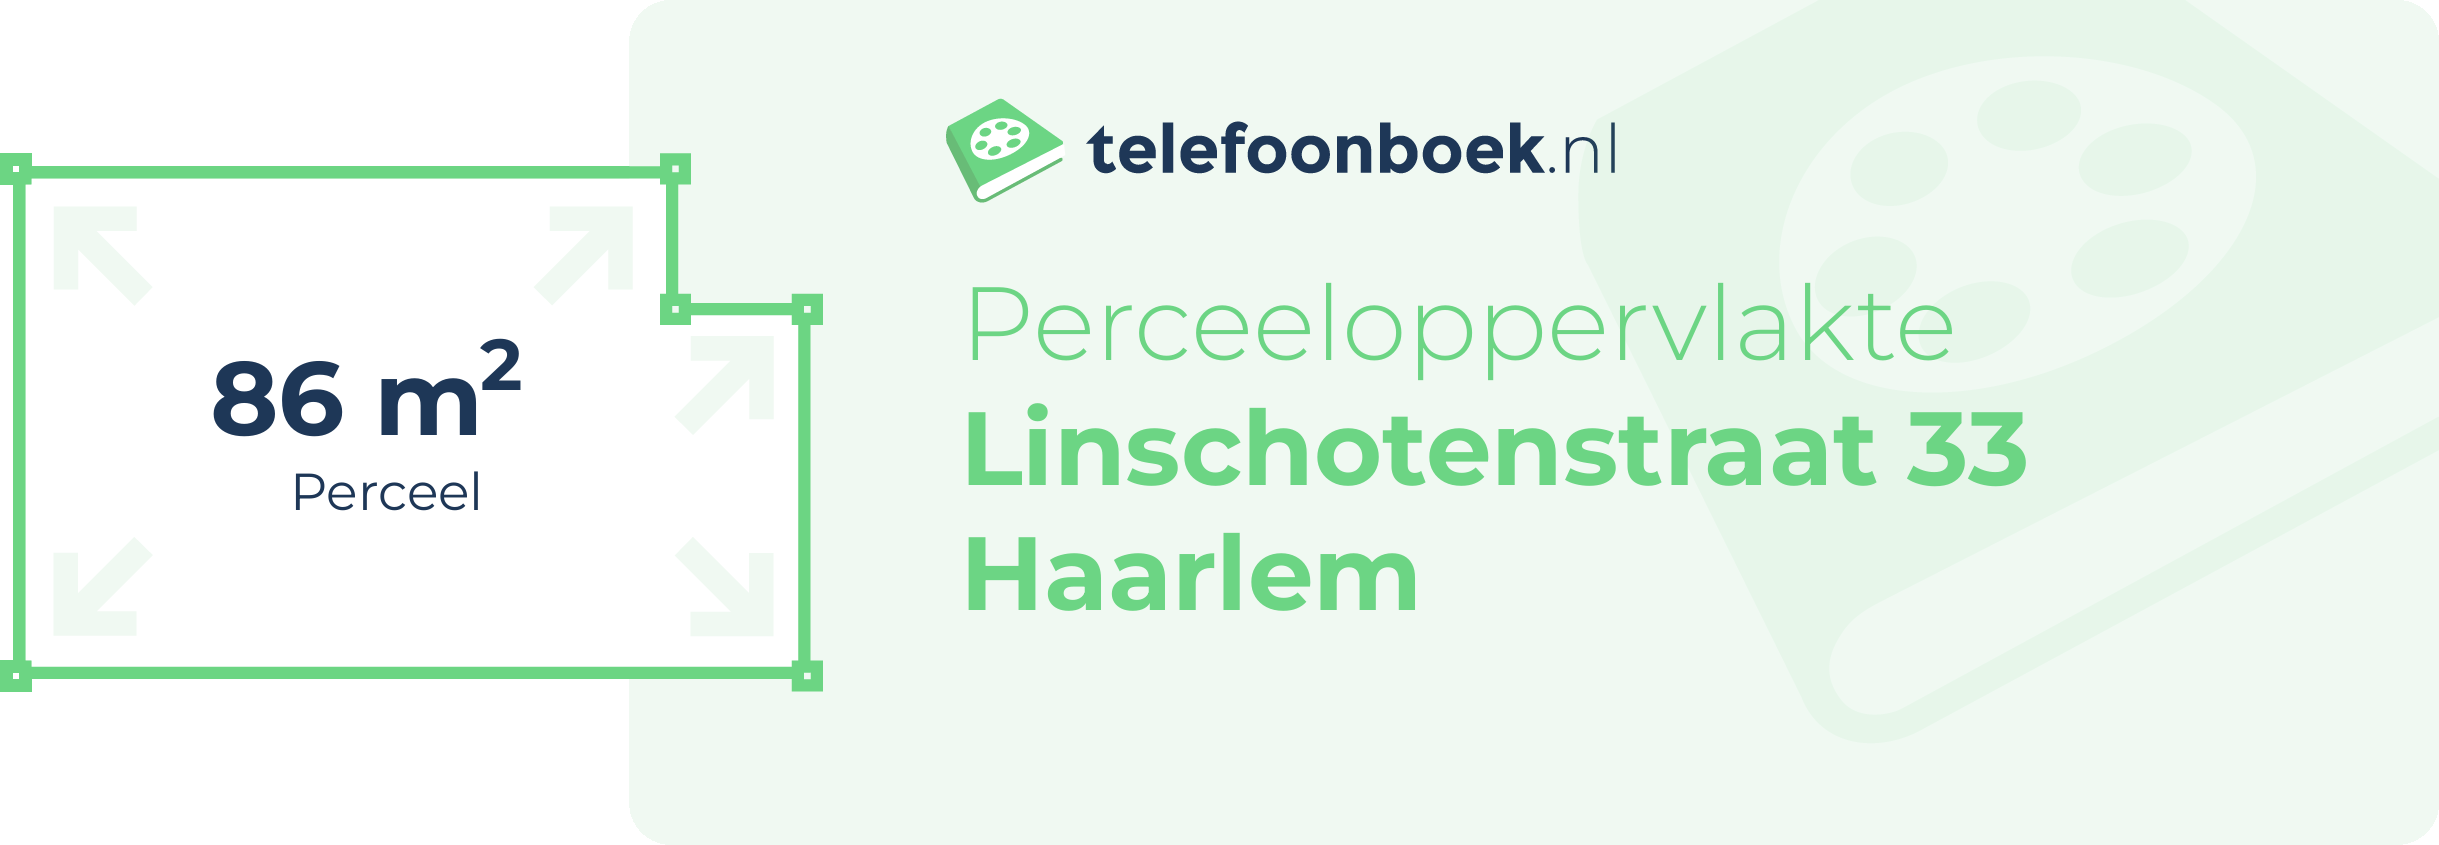 Perceeloppervlakte Linschotenstraat 33 Haarlem